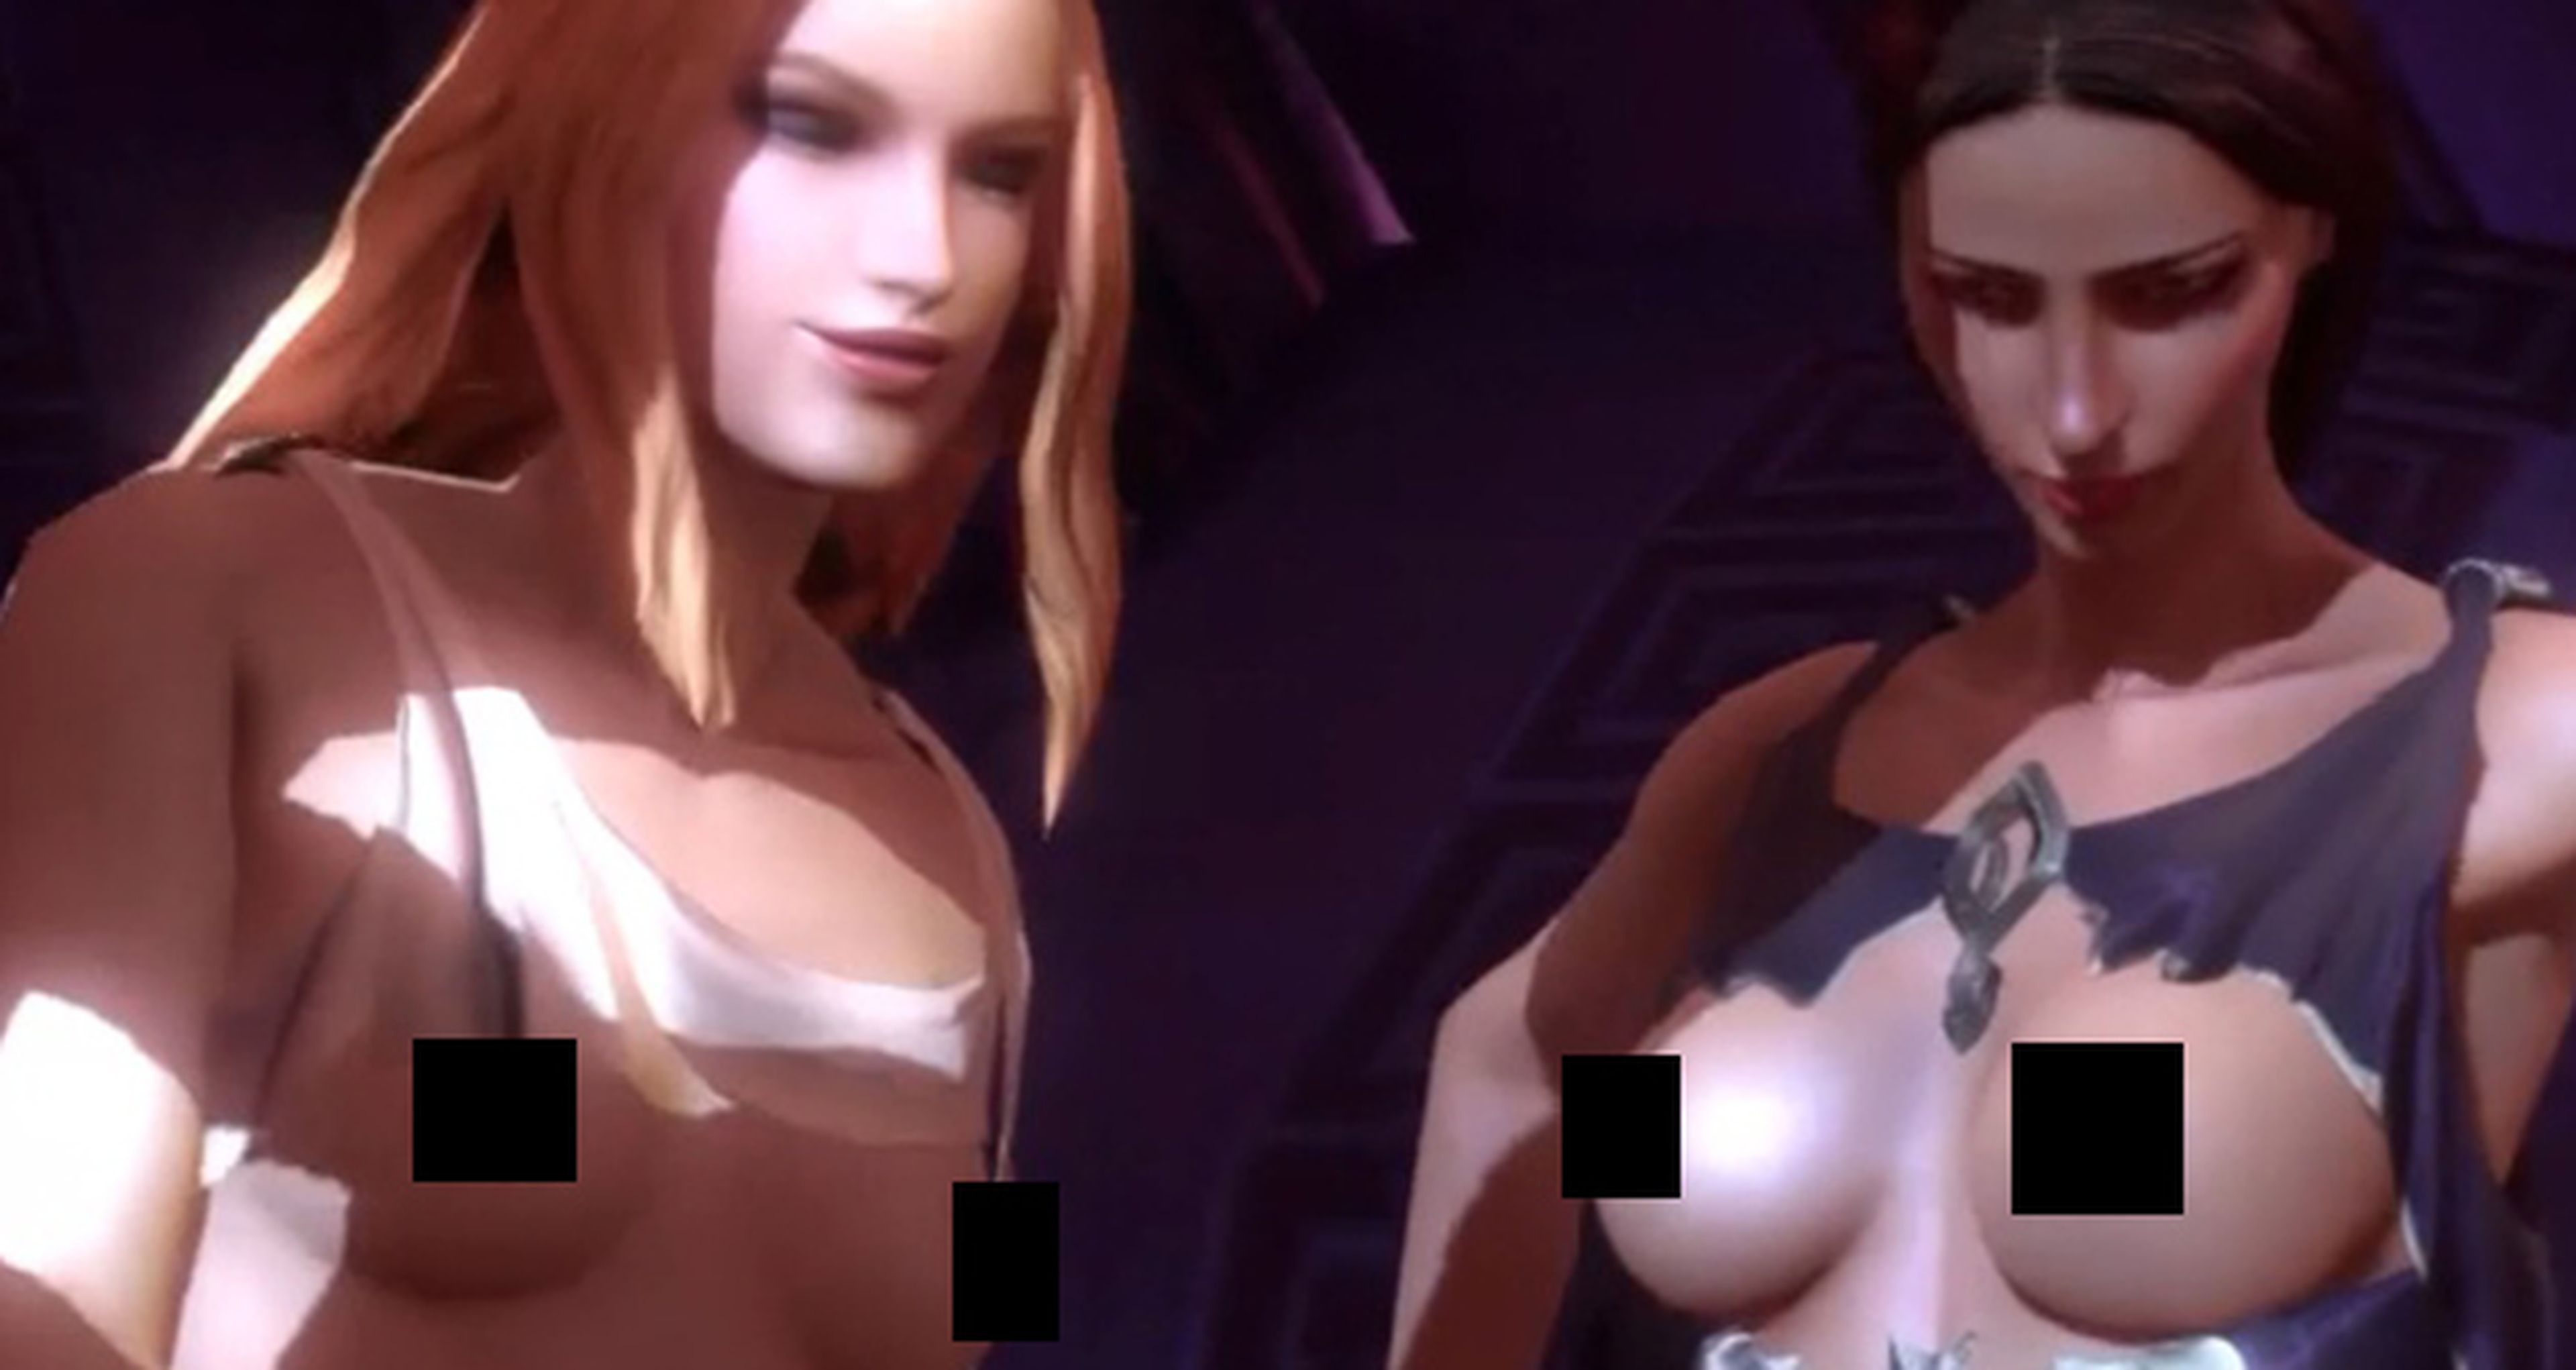 Los desnudos en los videojuegos